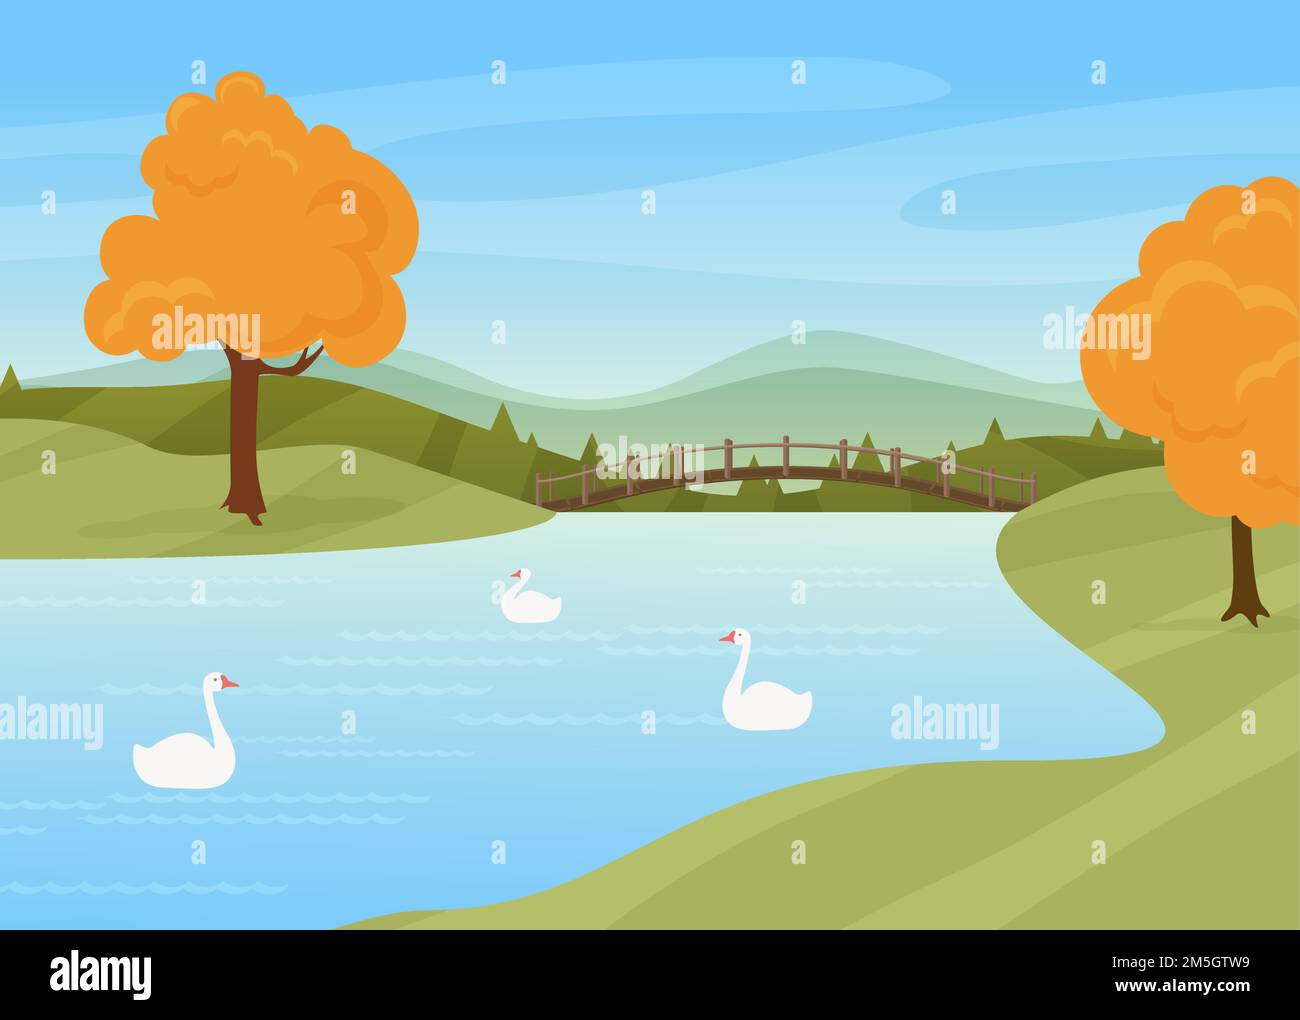 Schwäne schwimmen im Fluss, ländliche Herbst Natur Landschaft Vektorgrafik. Cartoon Wildvögel auf Wasseroberfläche, Brücke über Fluss oder See, Bäume mit yel Stock Vektor